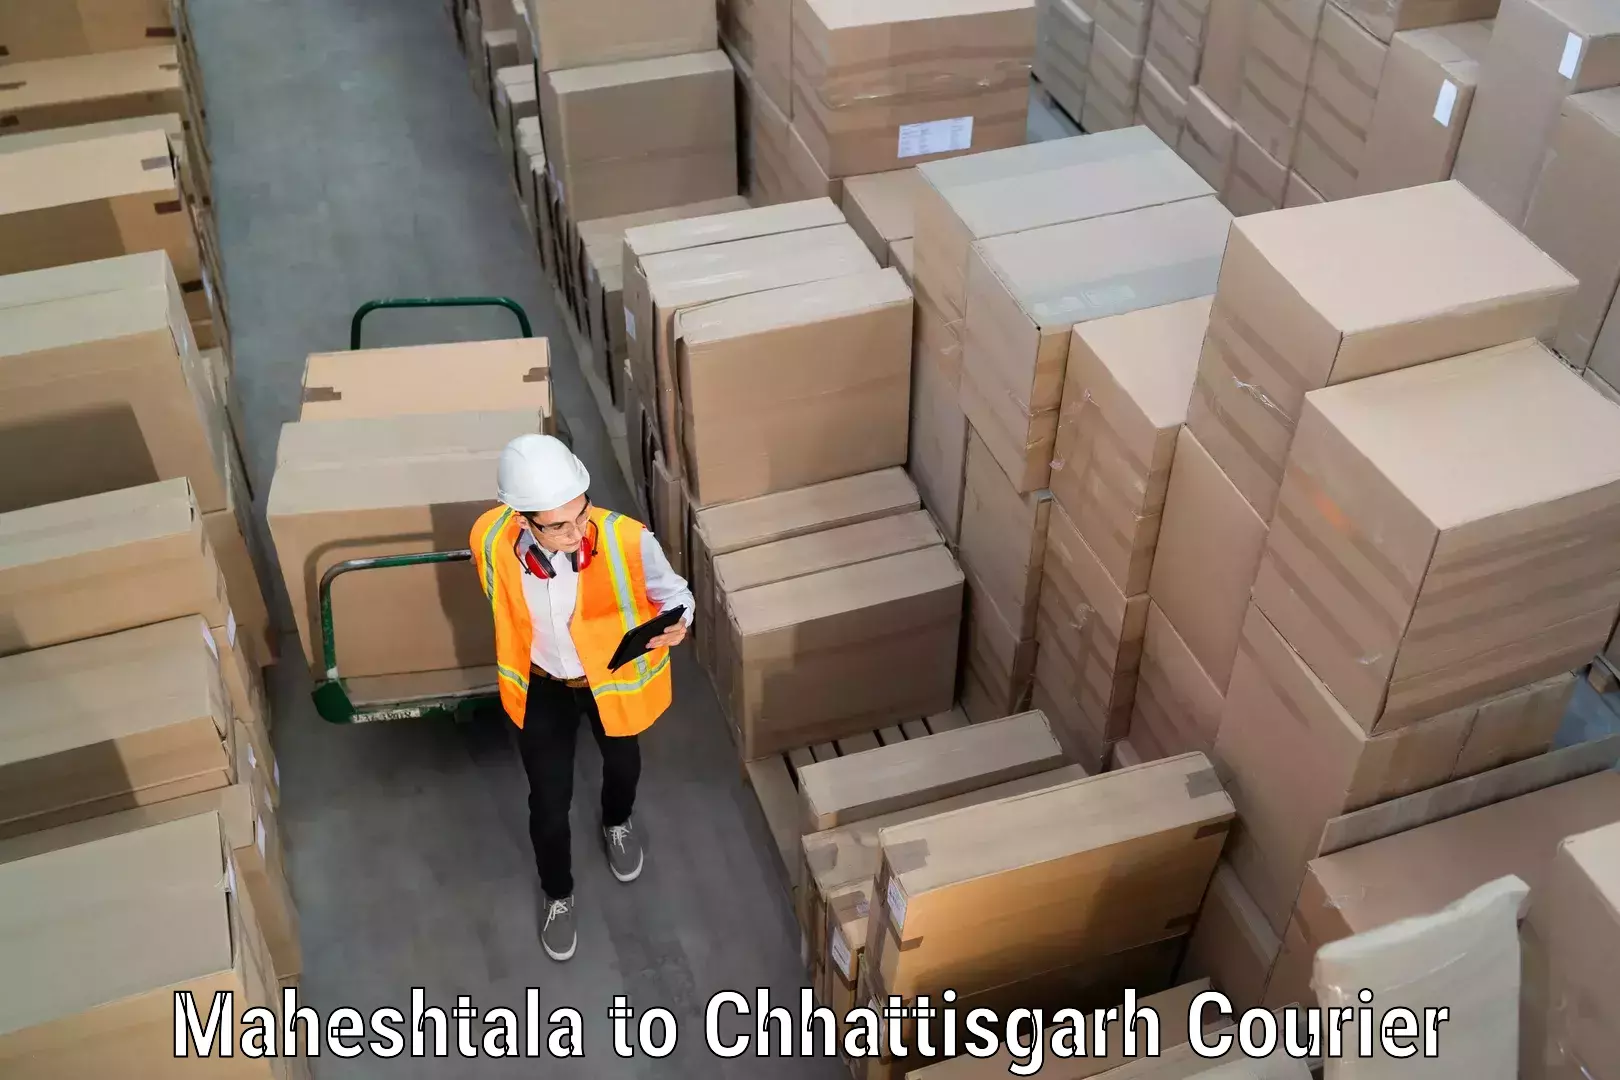 Furniture transport solutions Maheshtala to Chhattisgarh